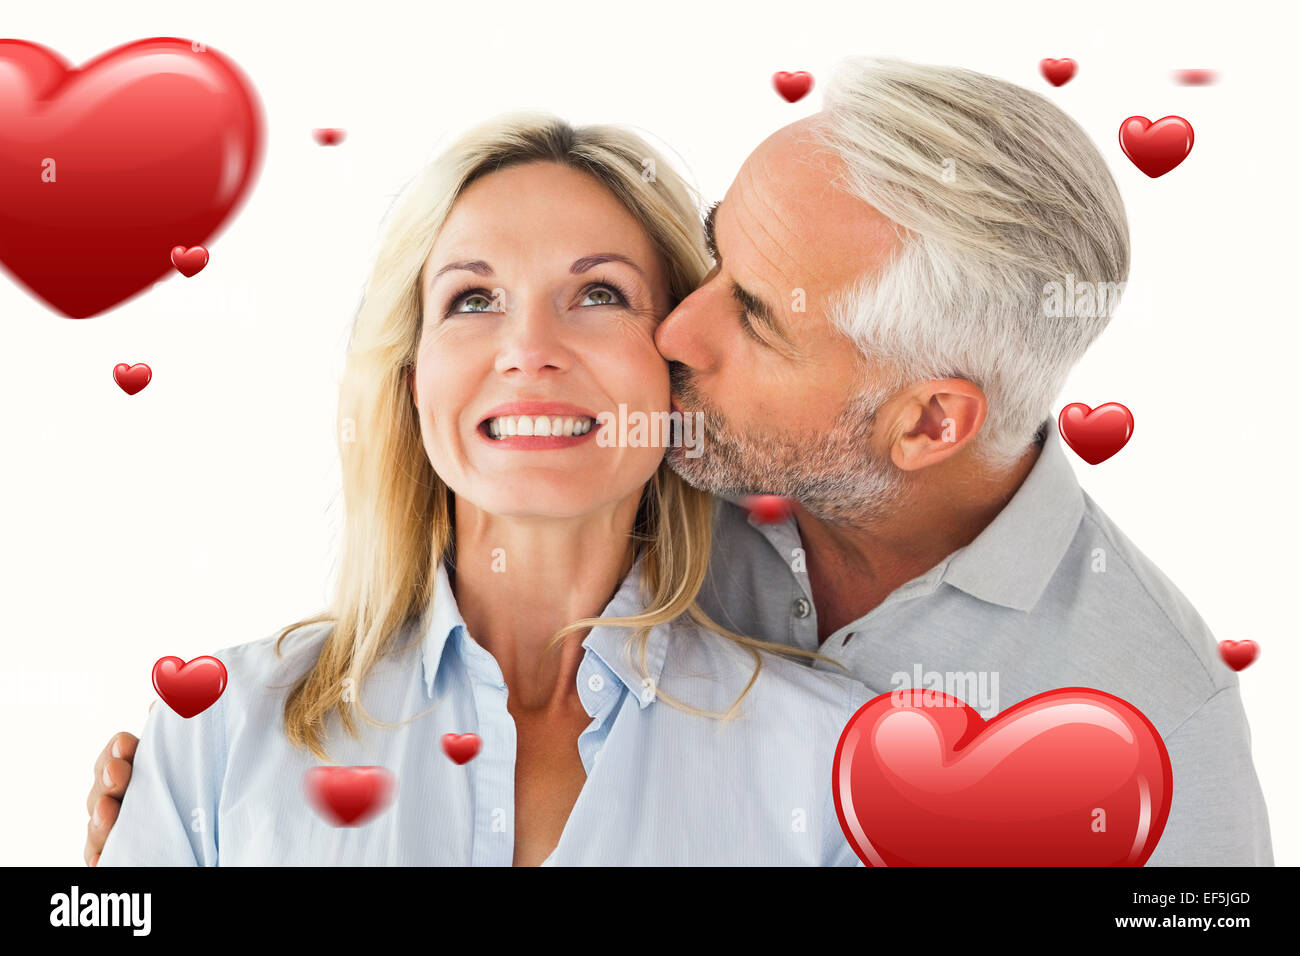 Zusammengesetztes Bild von liebevollen Mann seine Frau auf die Wange küssen Stockfoto